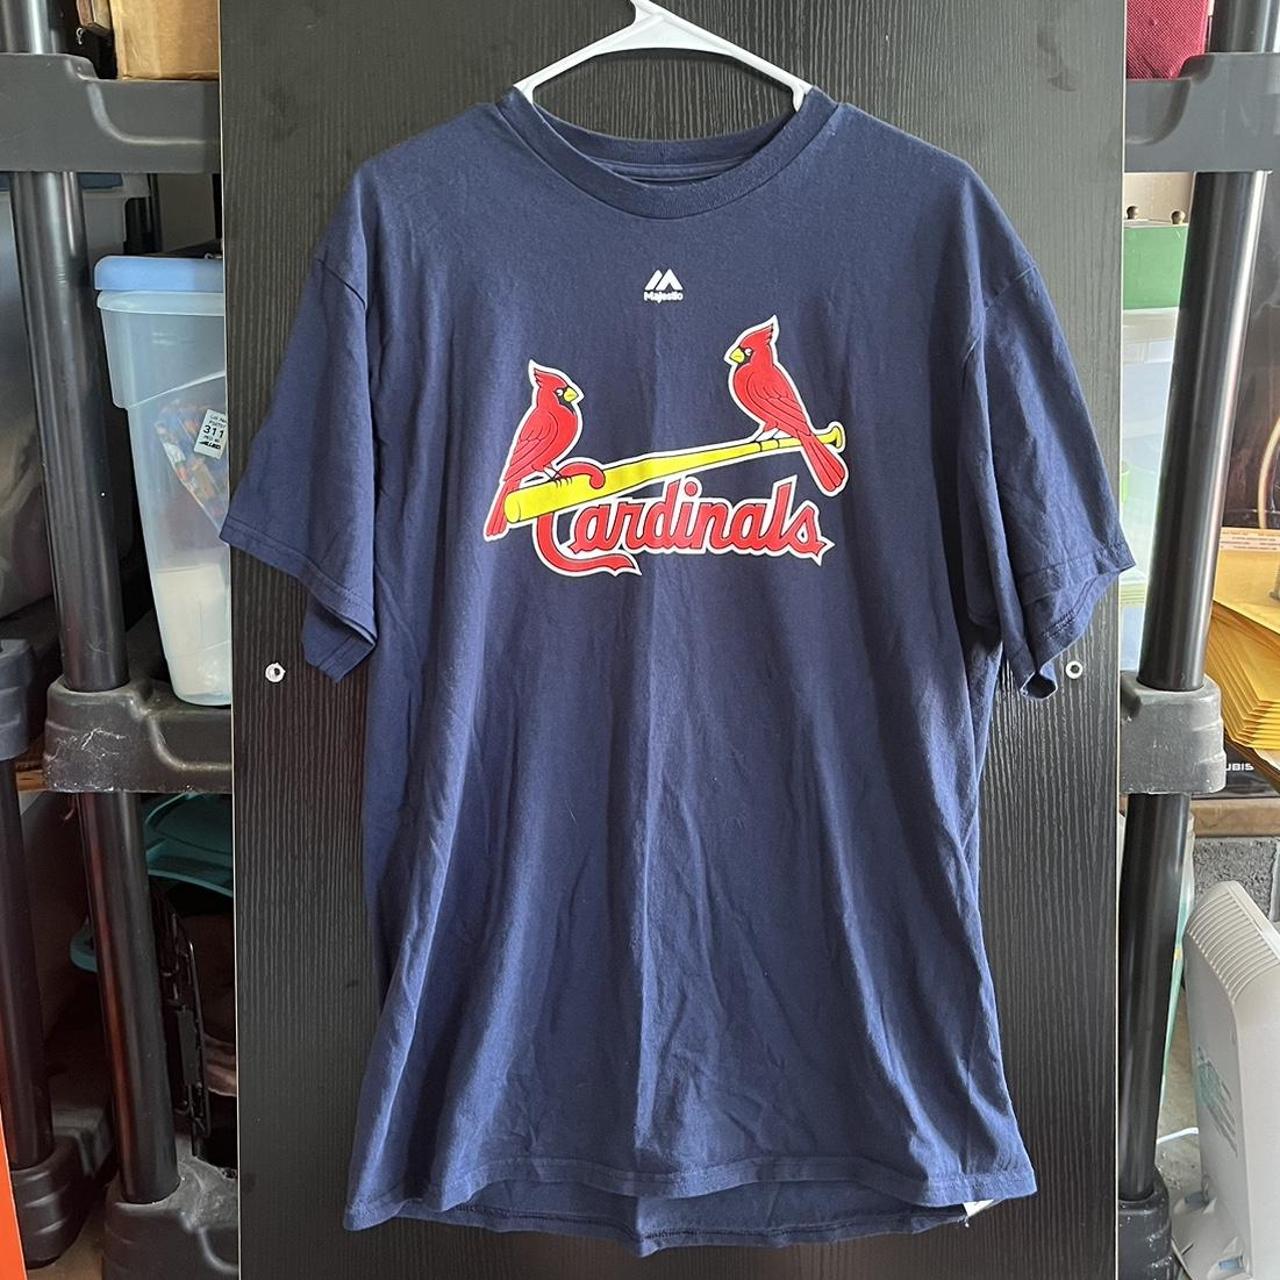 Vintage St. Louis Cardinals jersey shirt. Size large - Depop